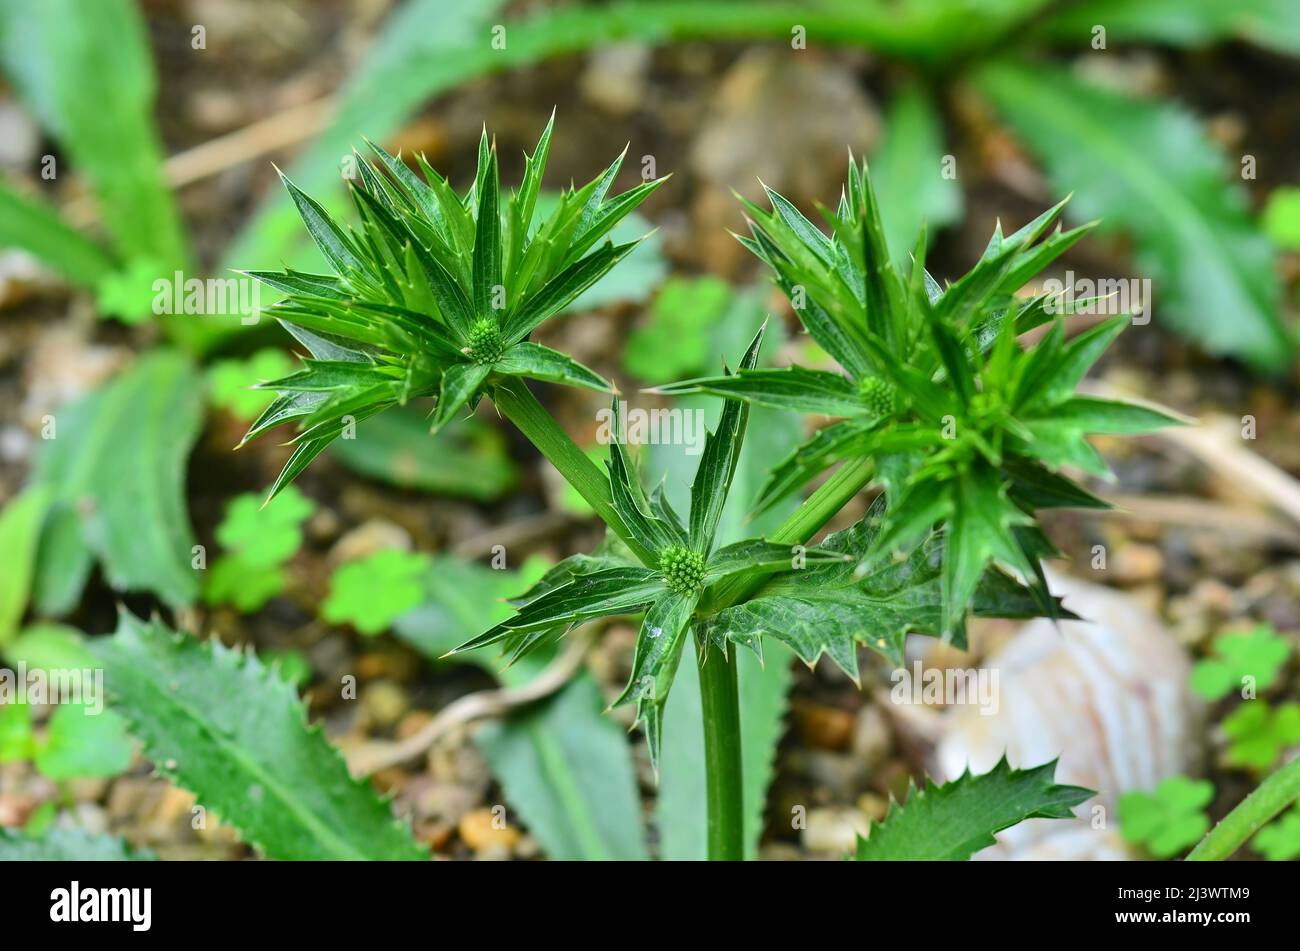 Stink Weed flower in my garden Stock Photo